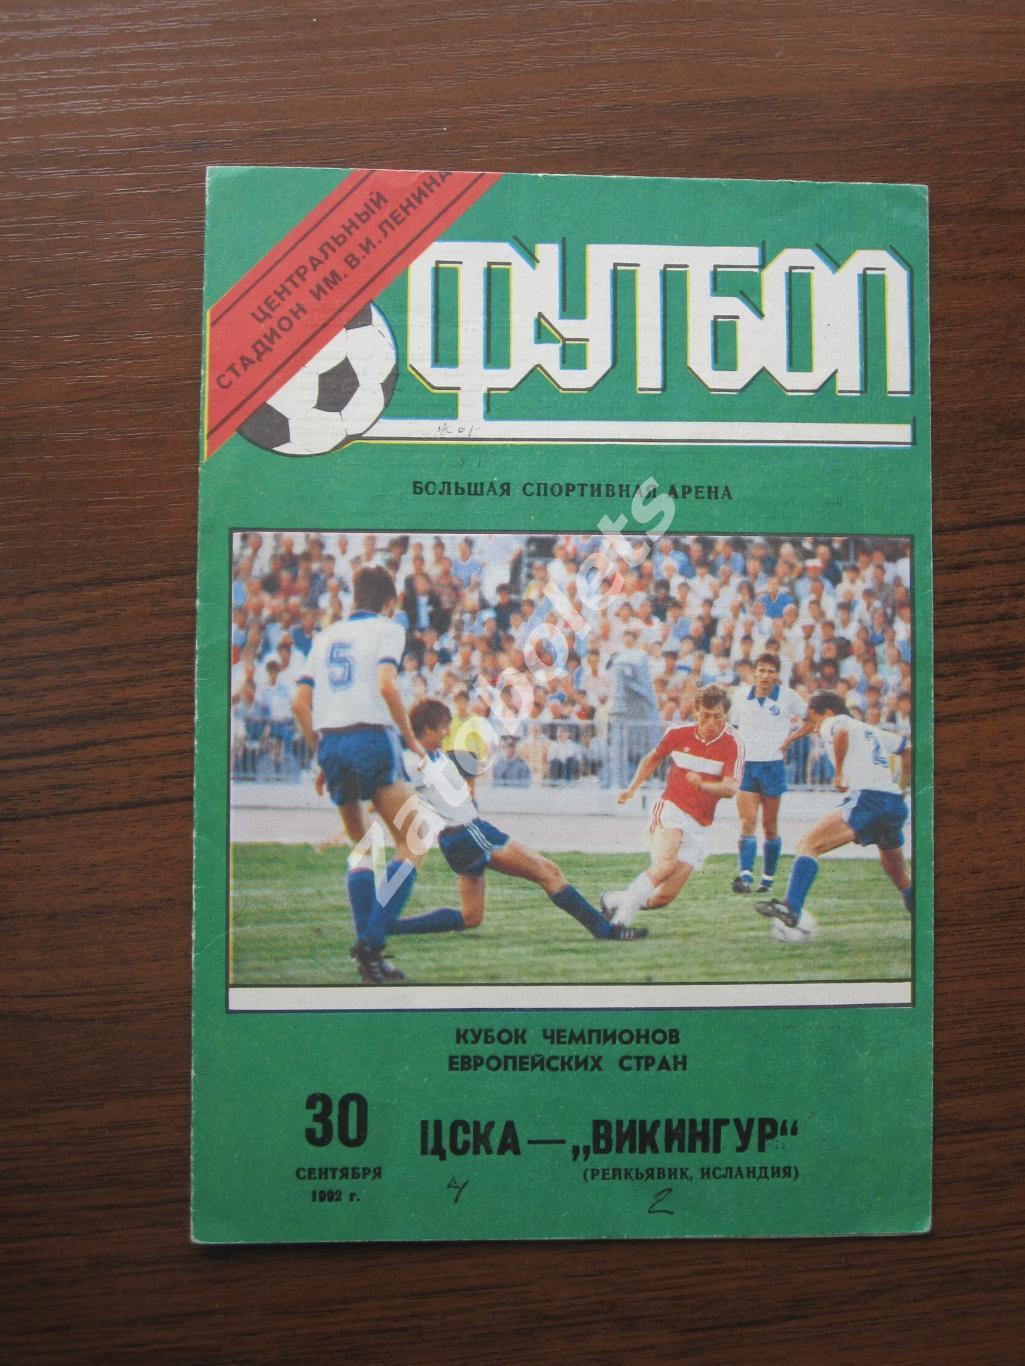 ЦСКА - Викингур 1991 Автограф 1